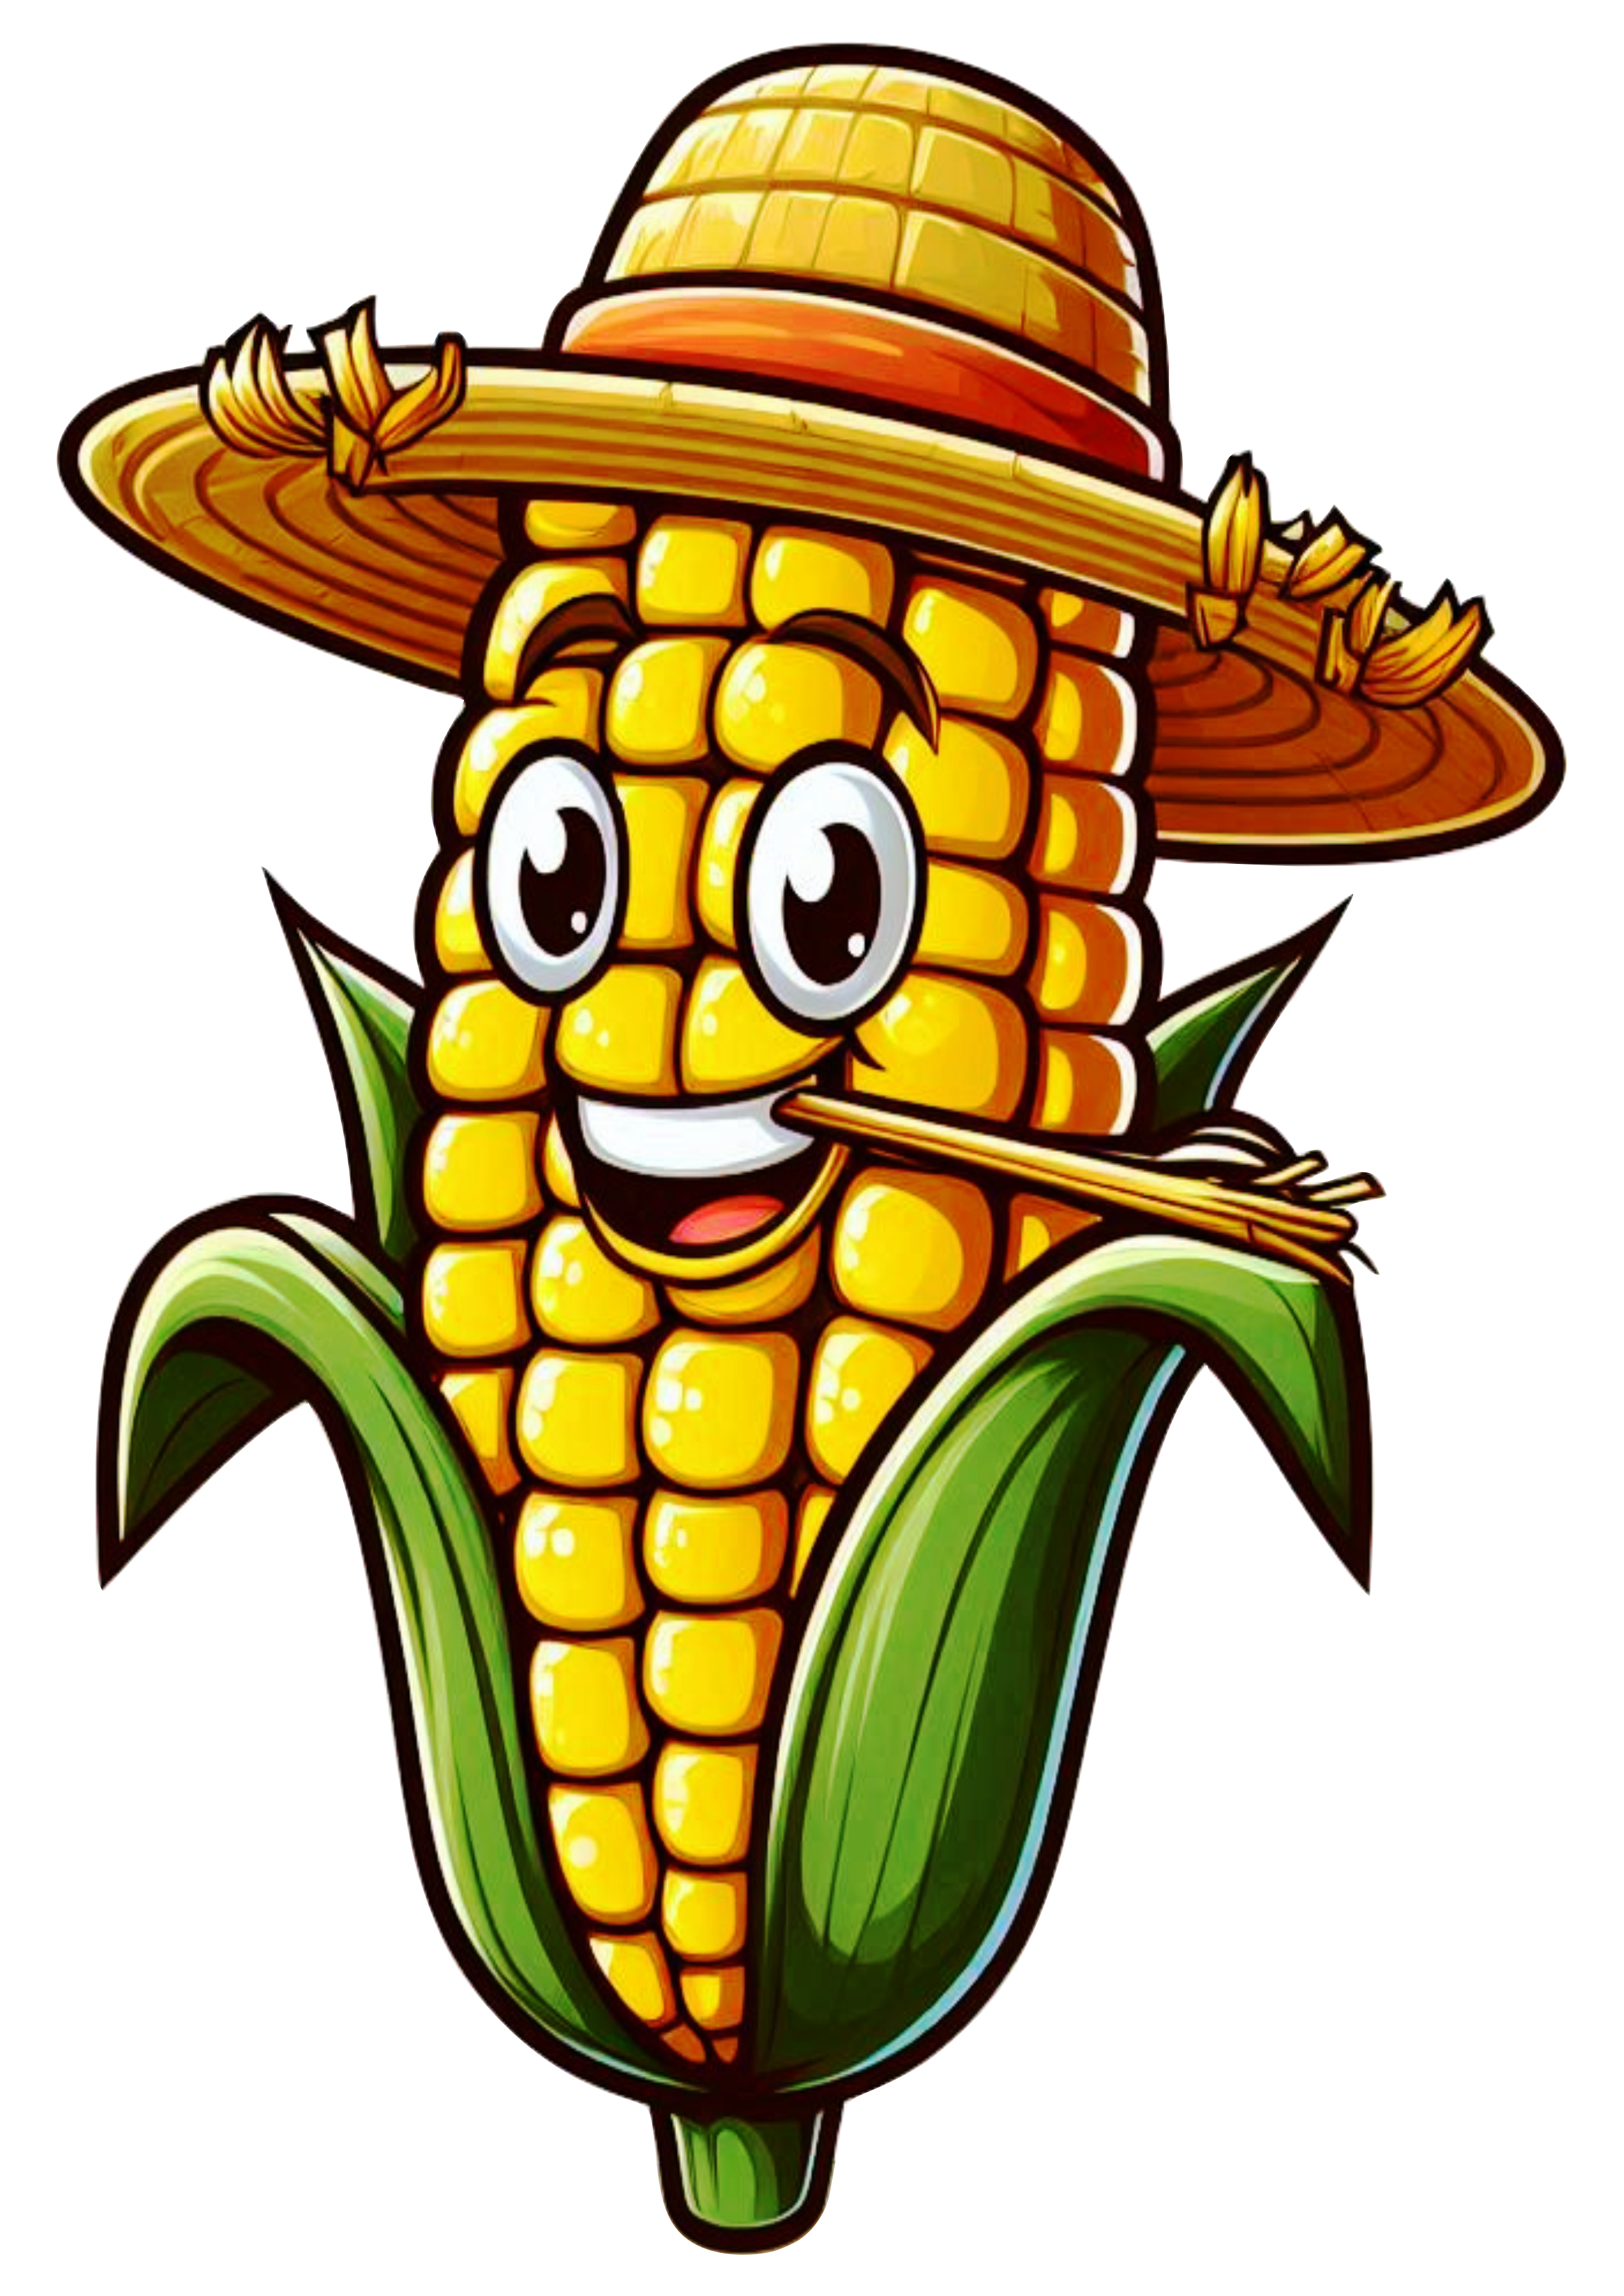 Imagens de festa junina png espiga de milho com chapéu de palha desenho simples cartoon free design fundo transparente vetor